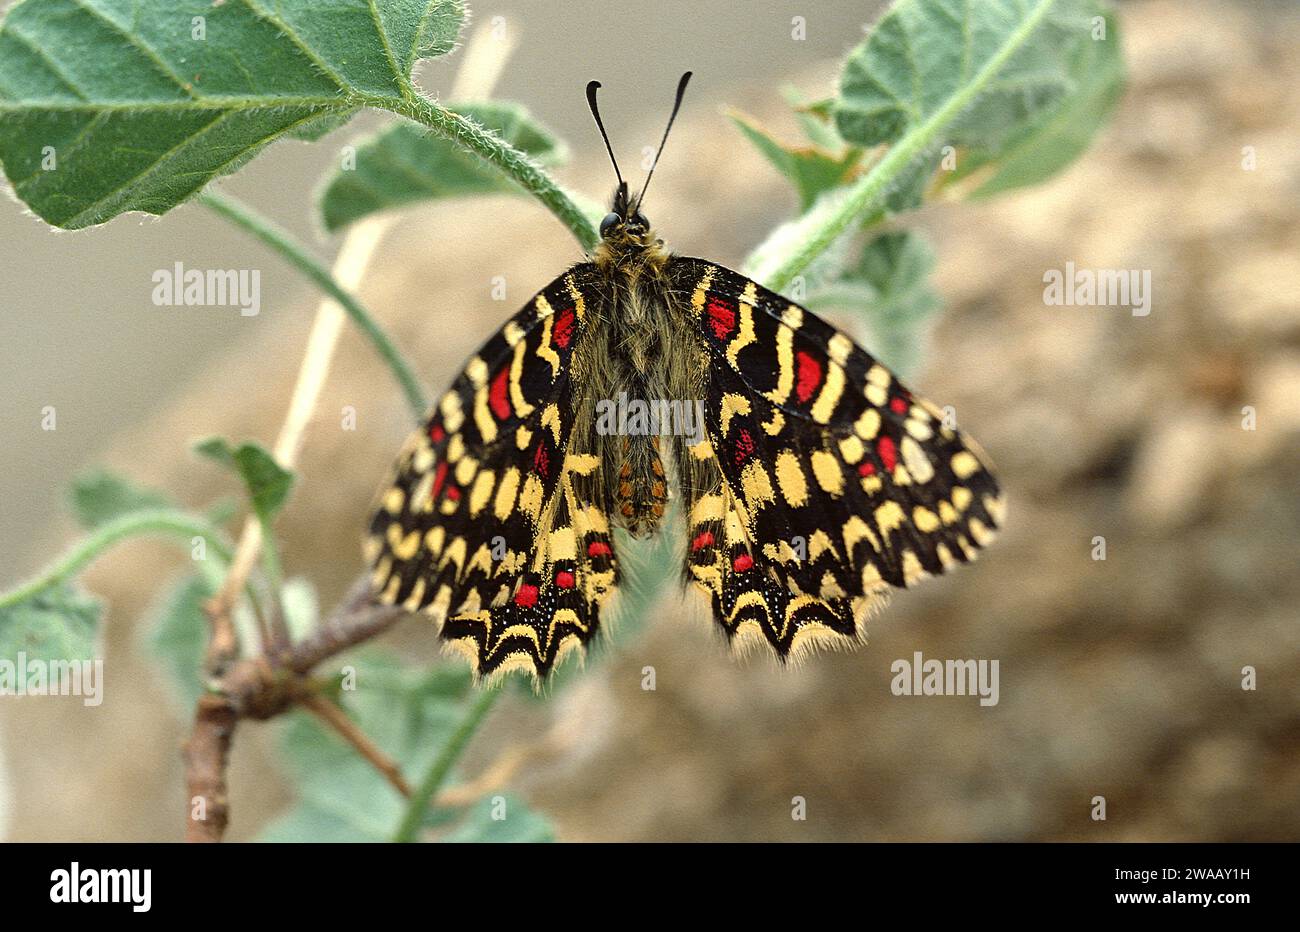 Il festone spagnolo (Zerynthia rumina) è una farfalla originaria del bacino del Mediterraneo occidentale (Spagna, Portogallo, Francia meridionale e Africa settentrionale). Adulto. Foto Stock